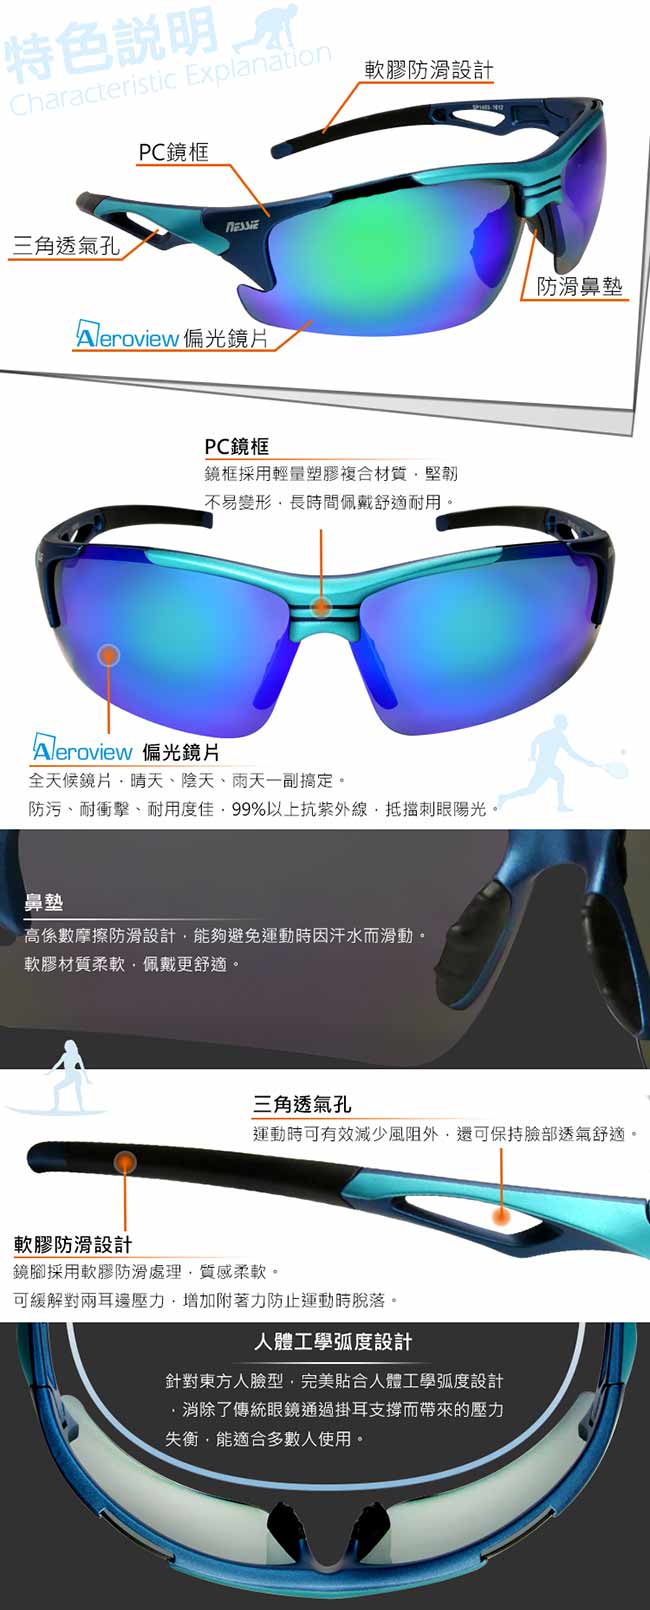 【Nessie尼斯眼鏡】偏光太陽眼鏡-專業運動款(越野藍)贈眼鏡盒 抗UV紫外線 健走